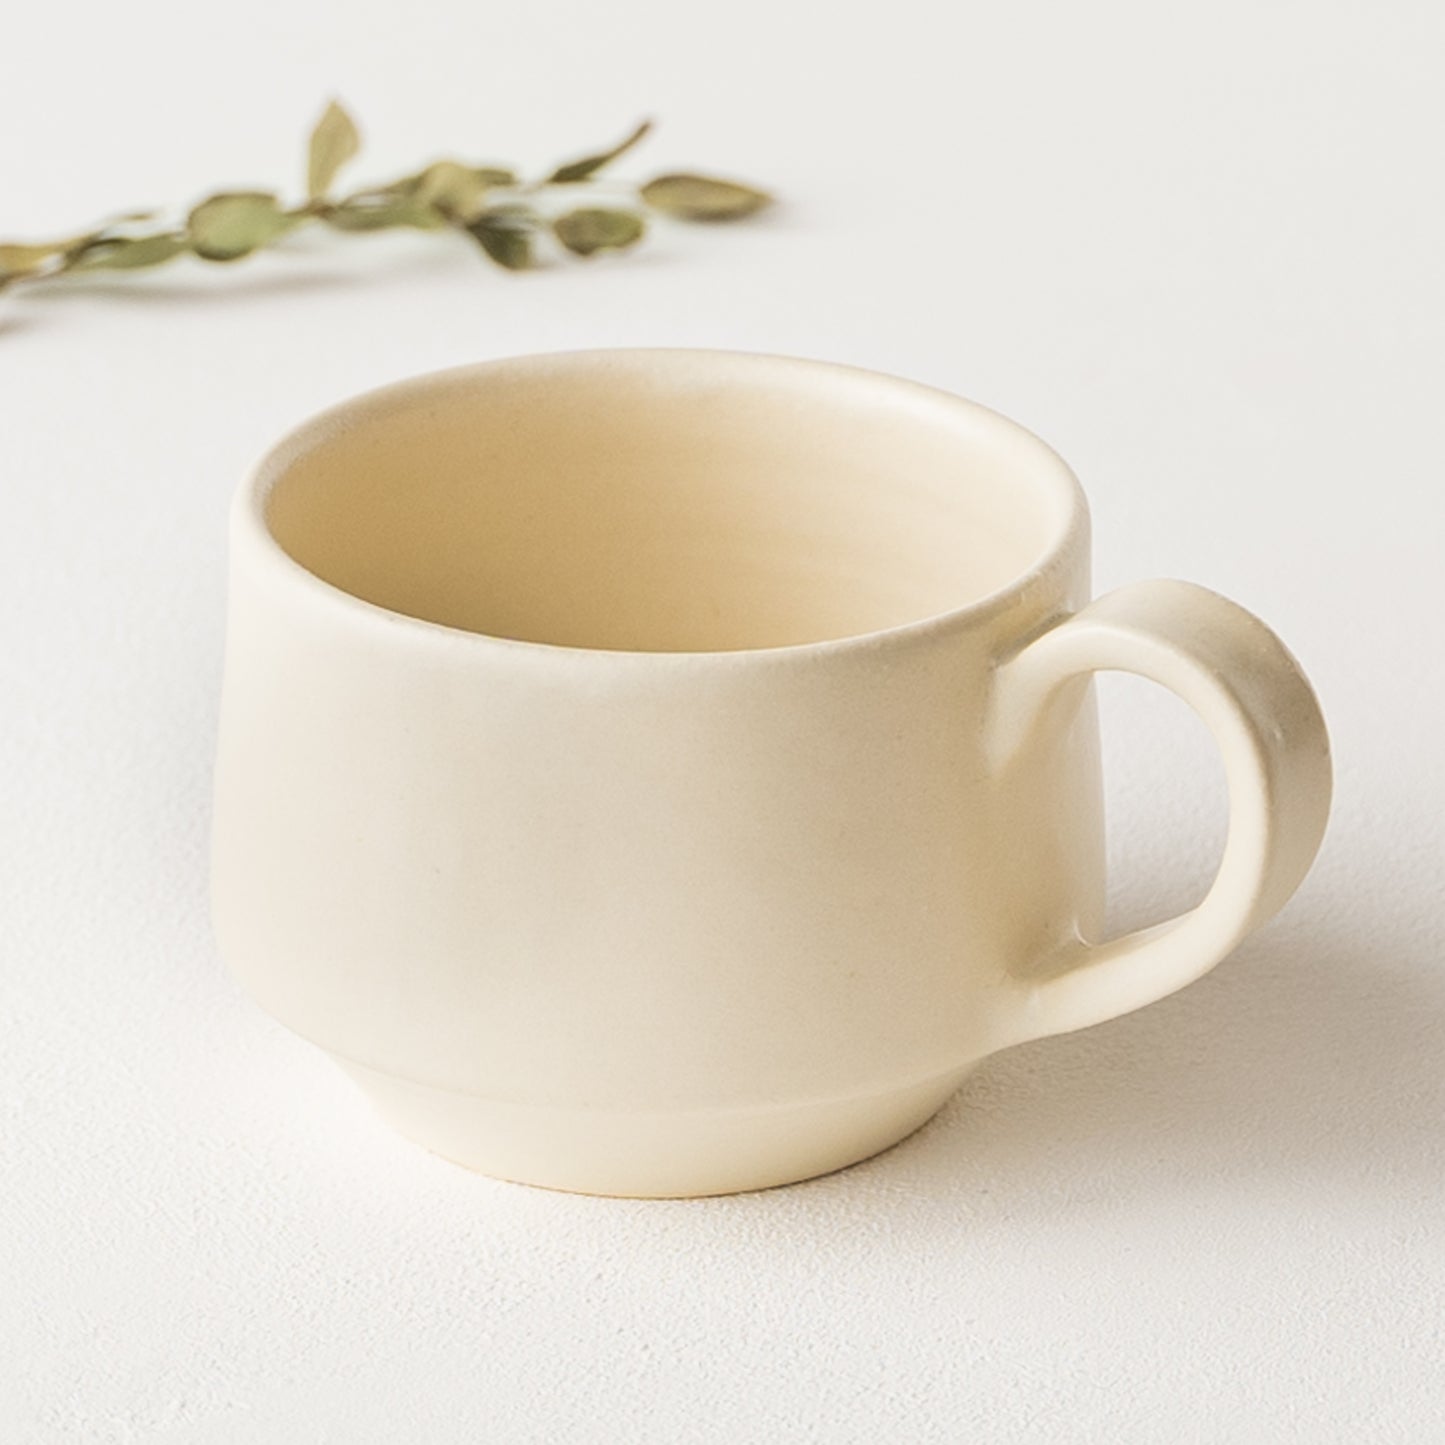 ほっと一息タイムをゆっくり楽しめるyoshida potteryのコーヒーカップ